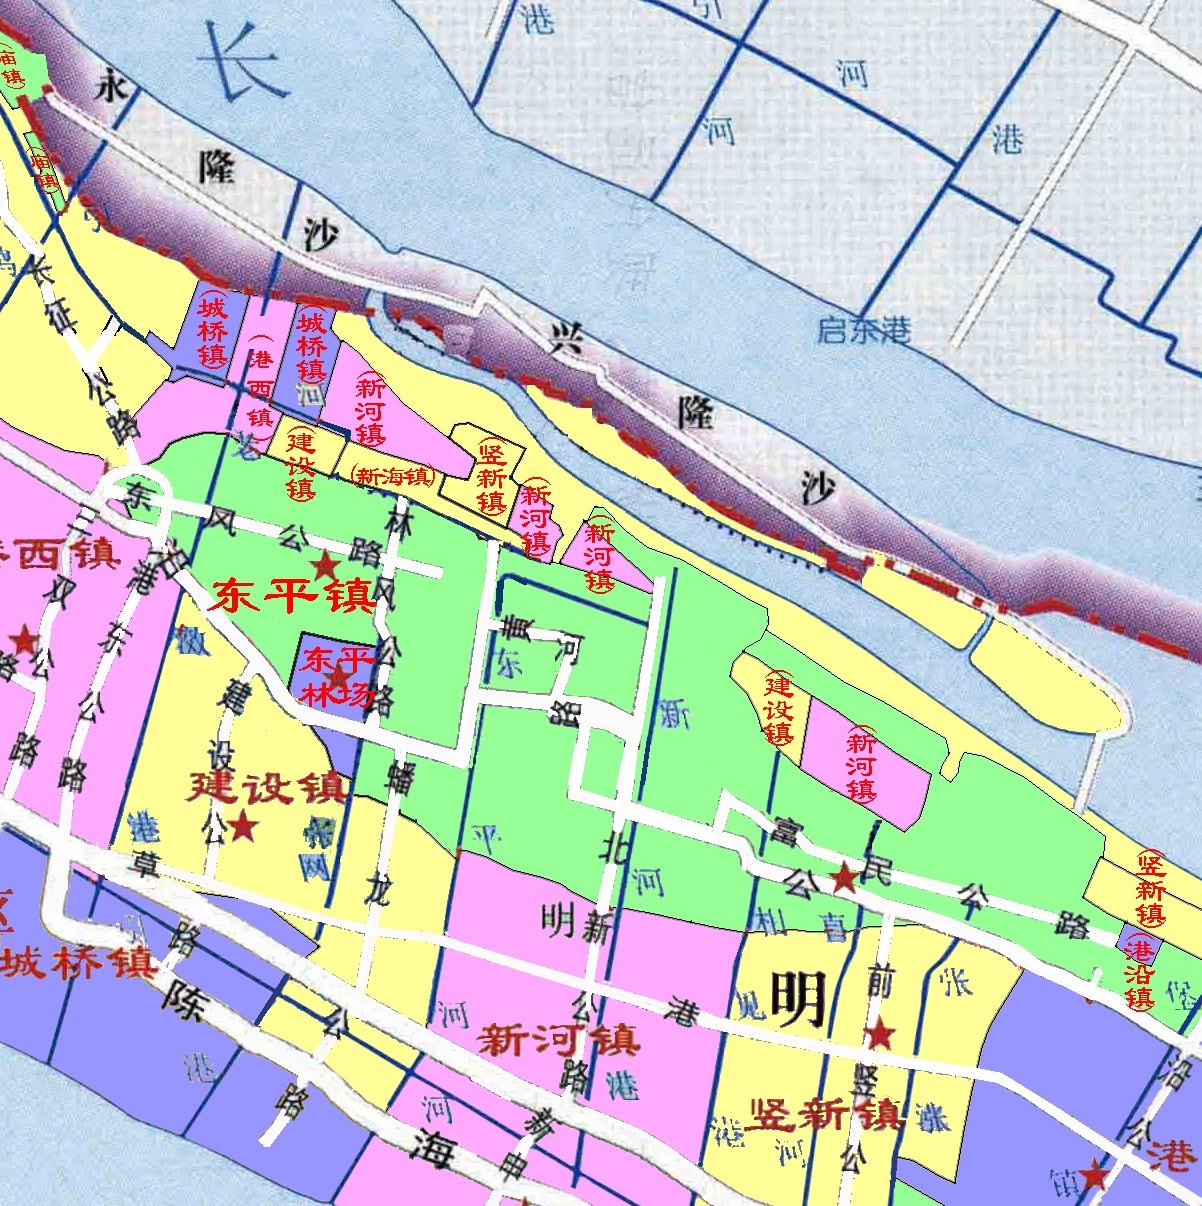 上海崇明区的行政区划:各镇形状千奇百怪,飞地四处分散